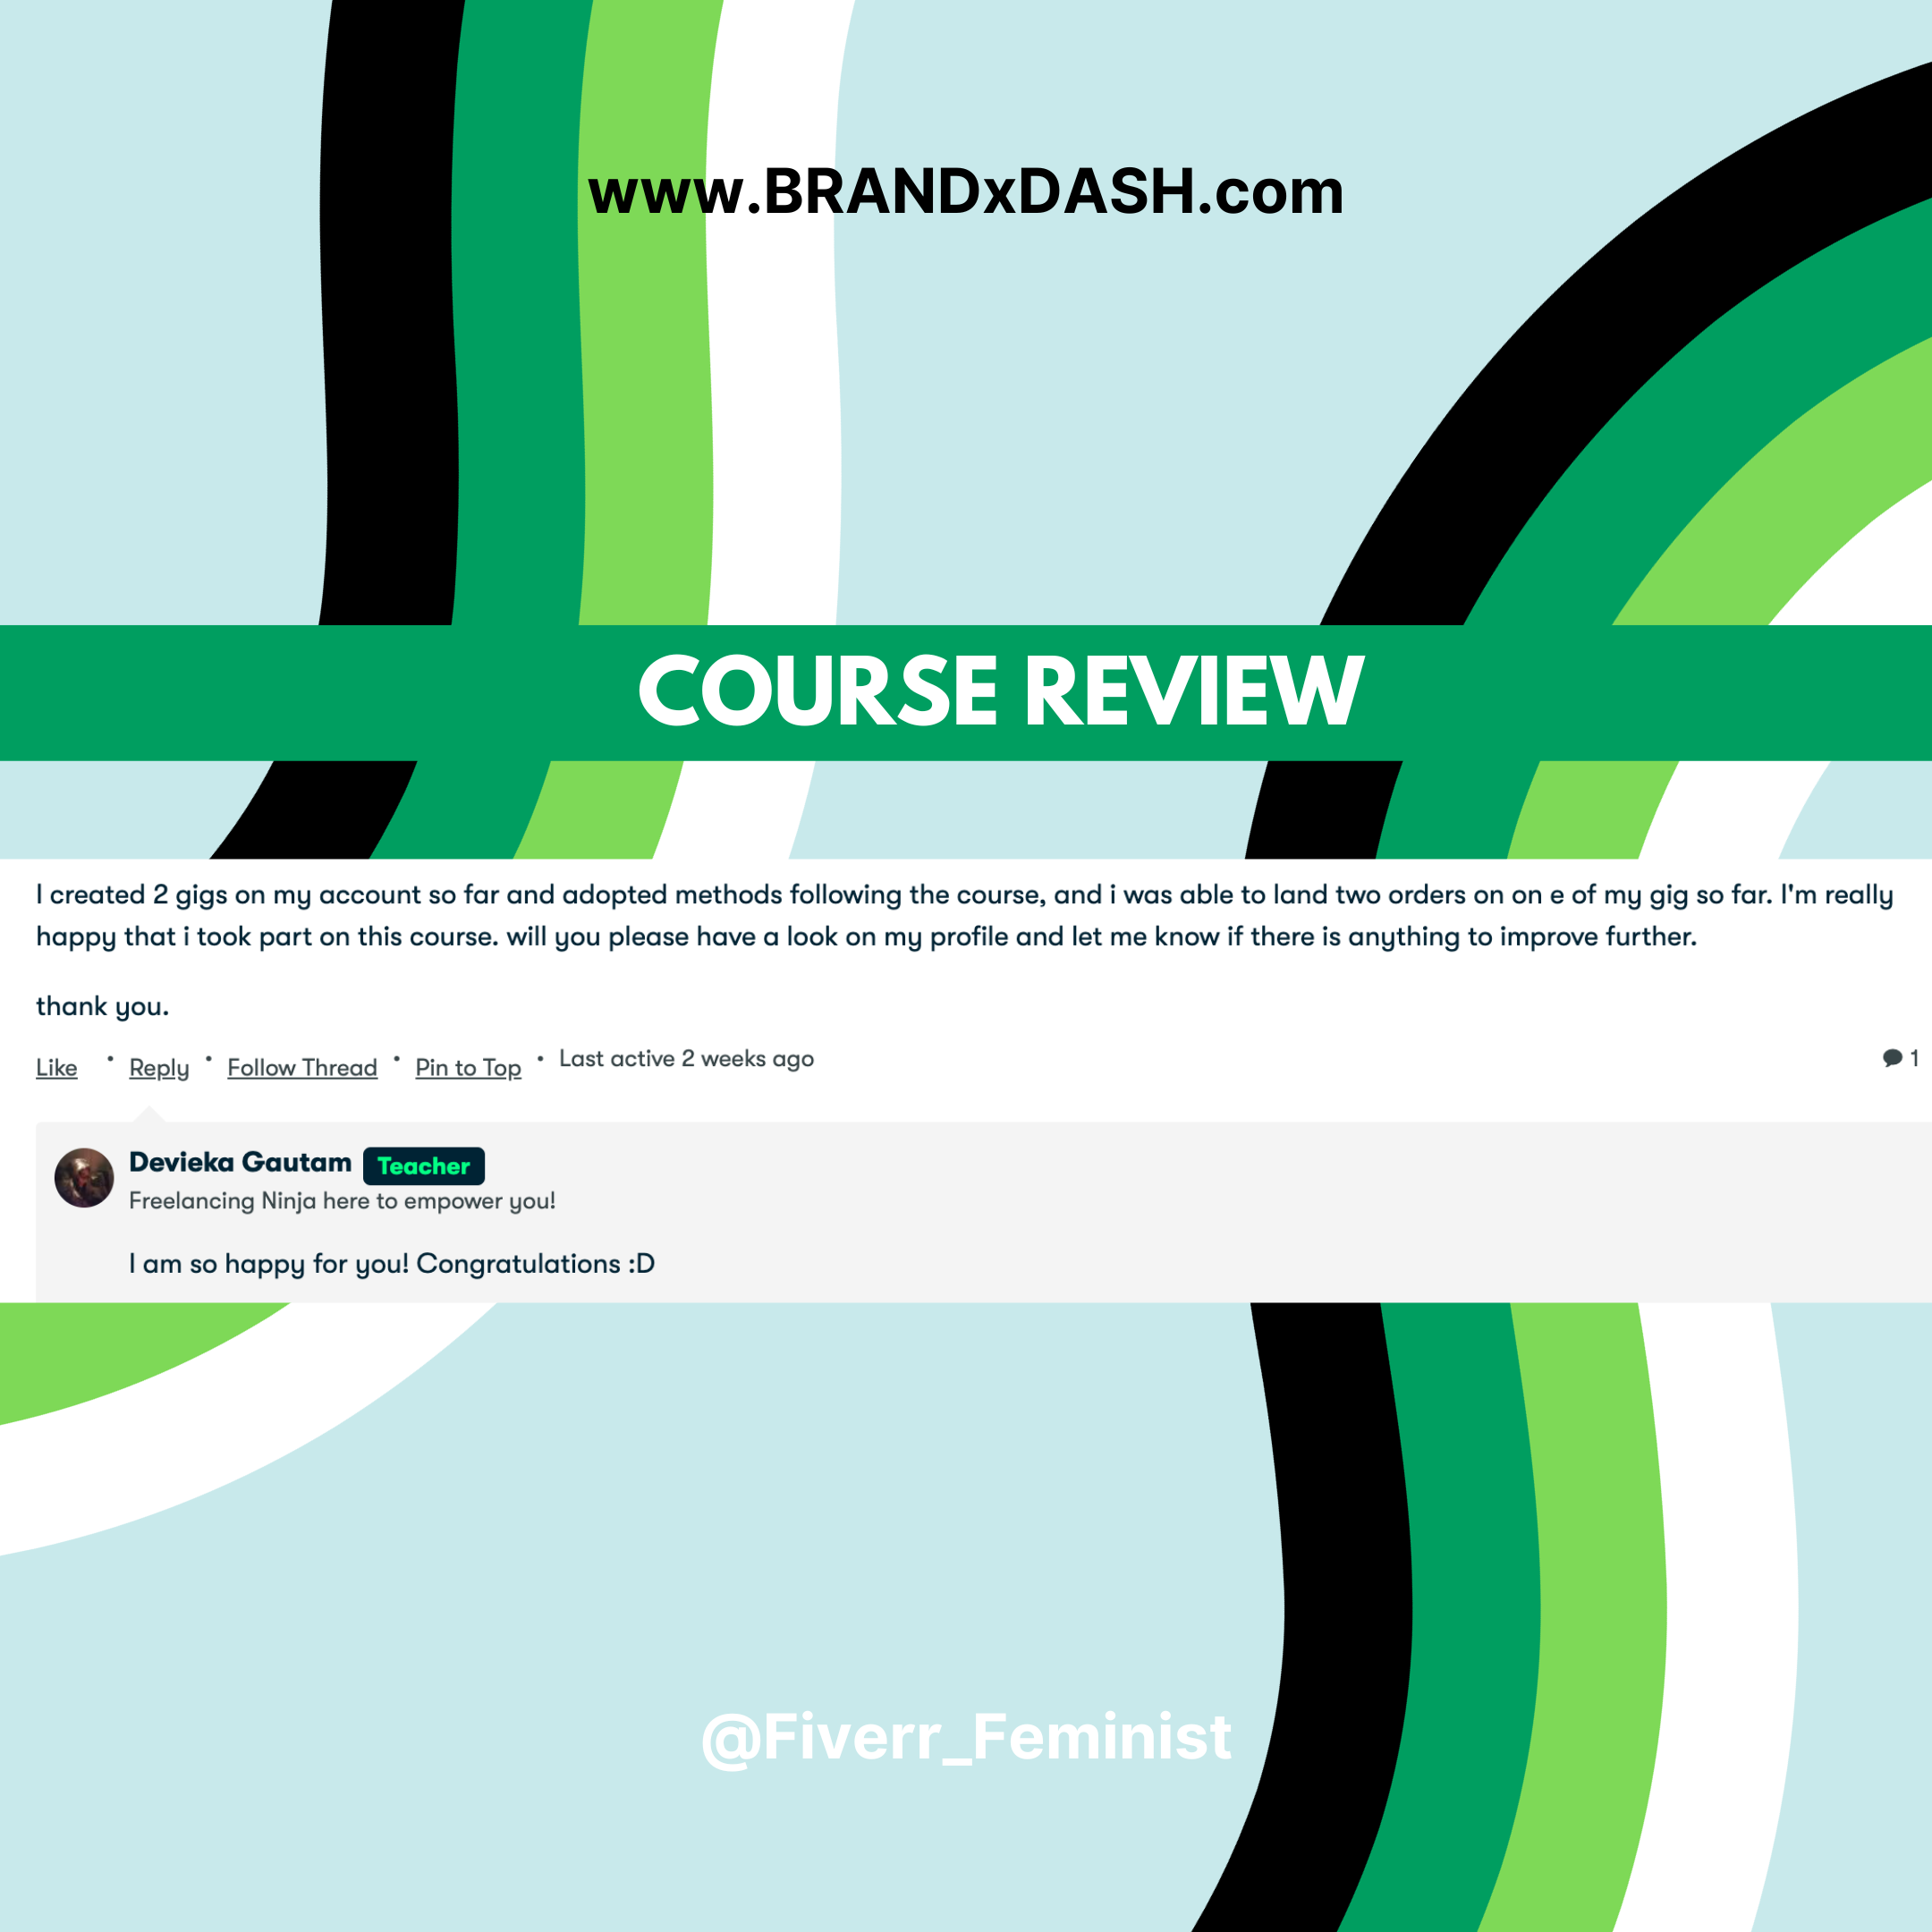 Course Review - @fiverr_feminist - www.brandxdash.com